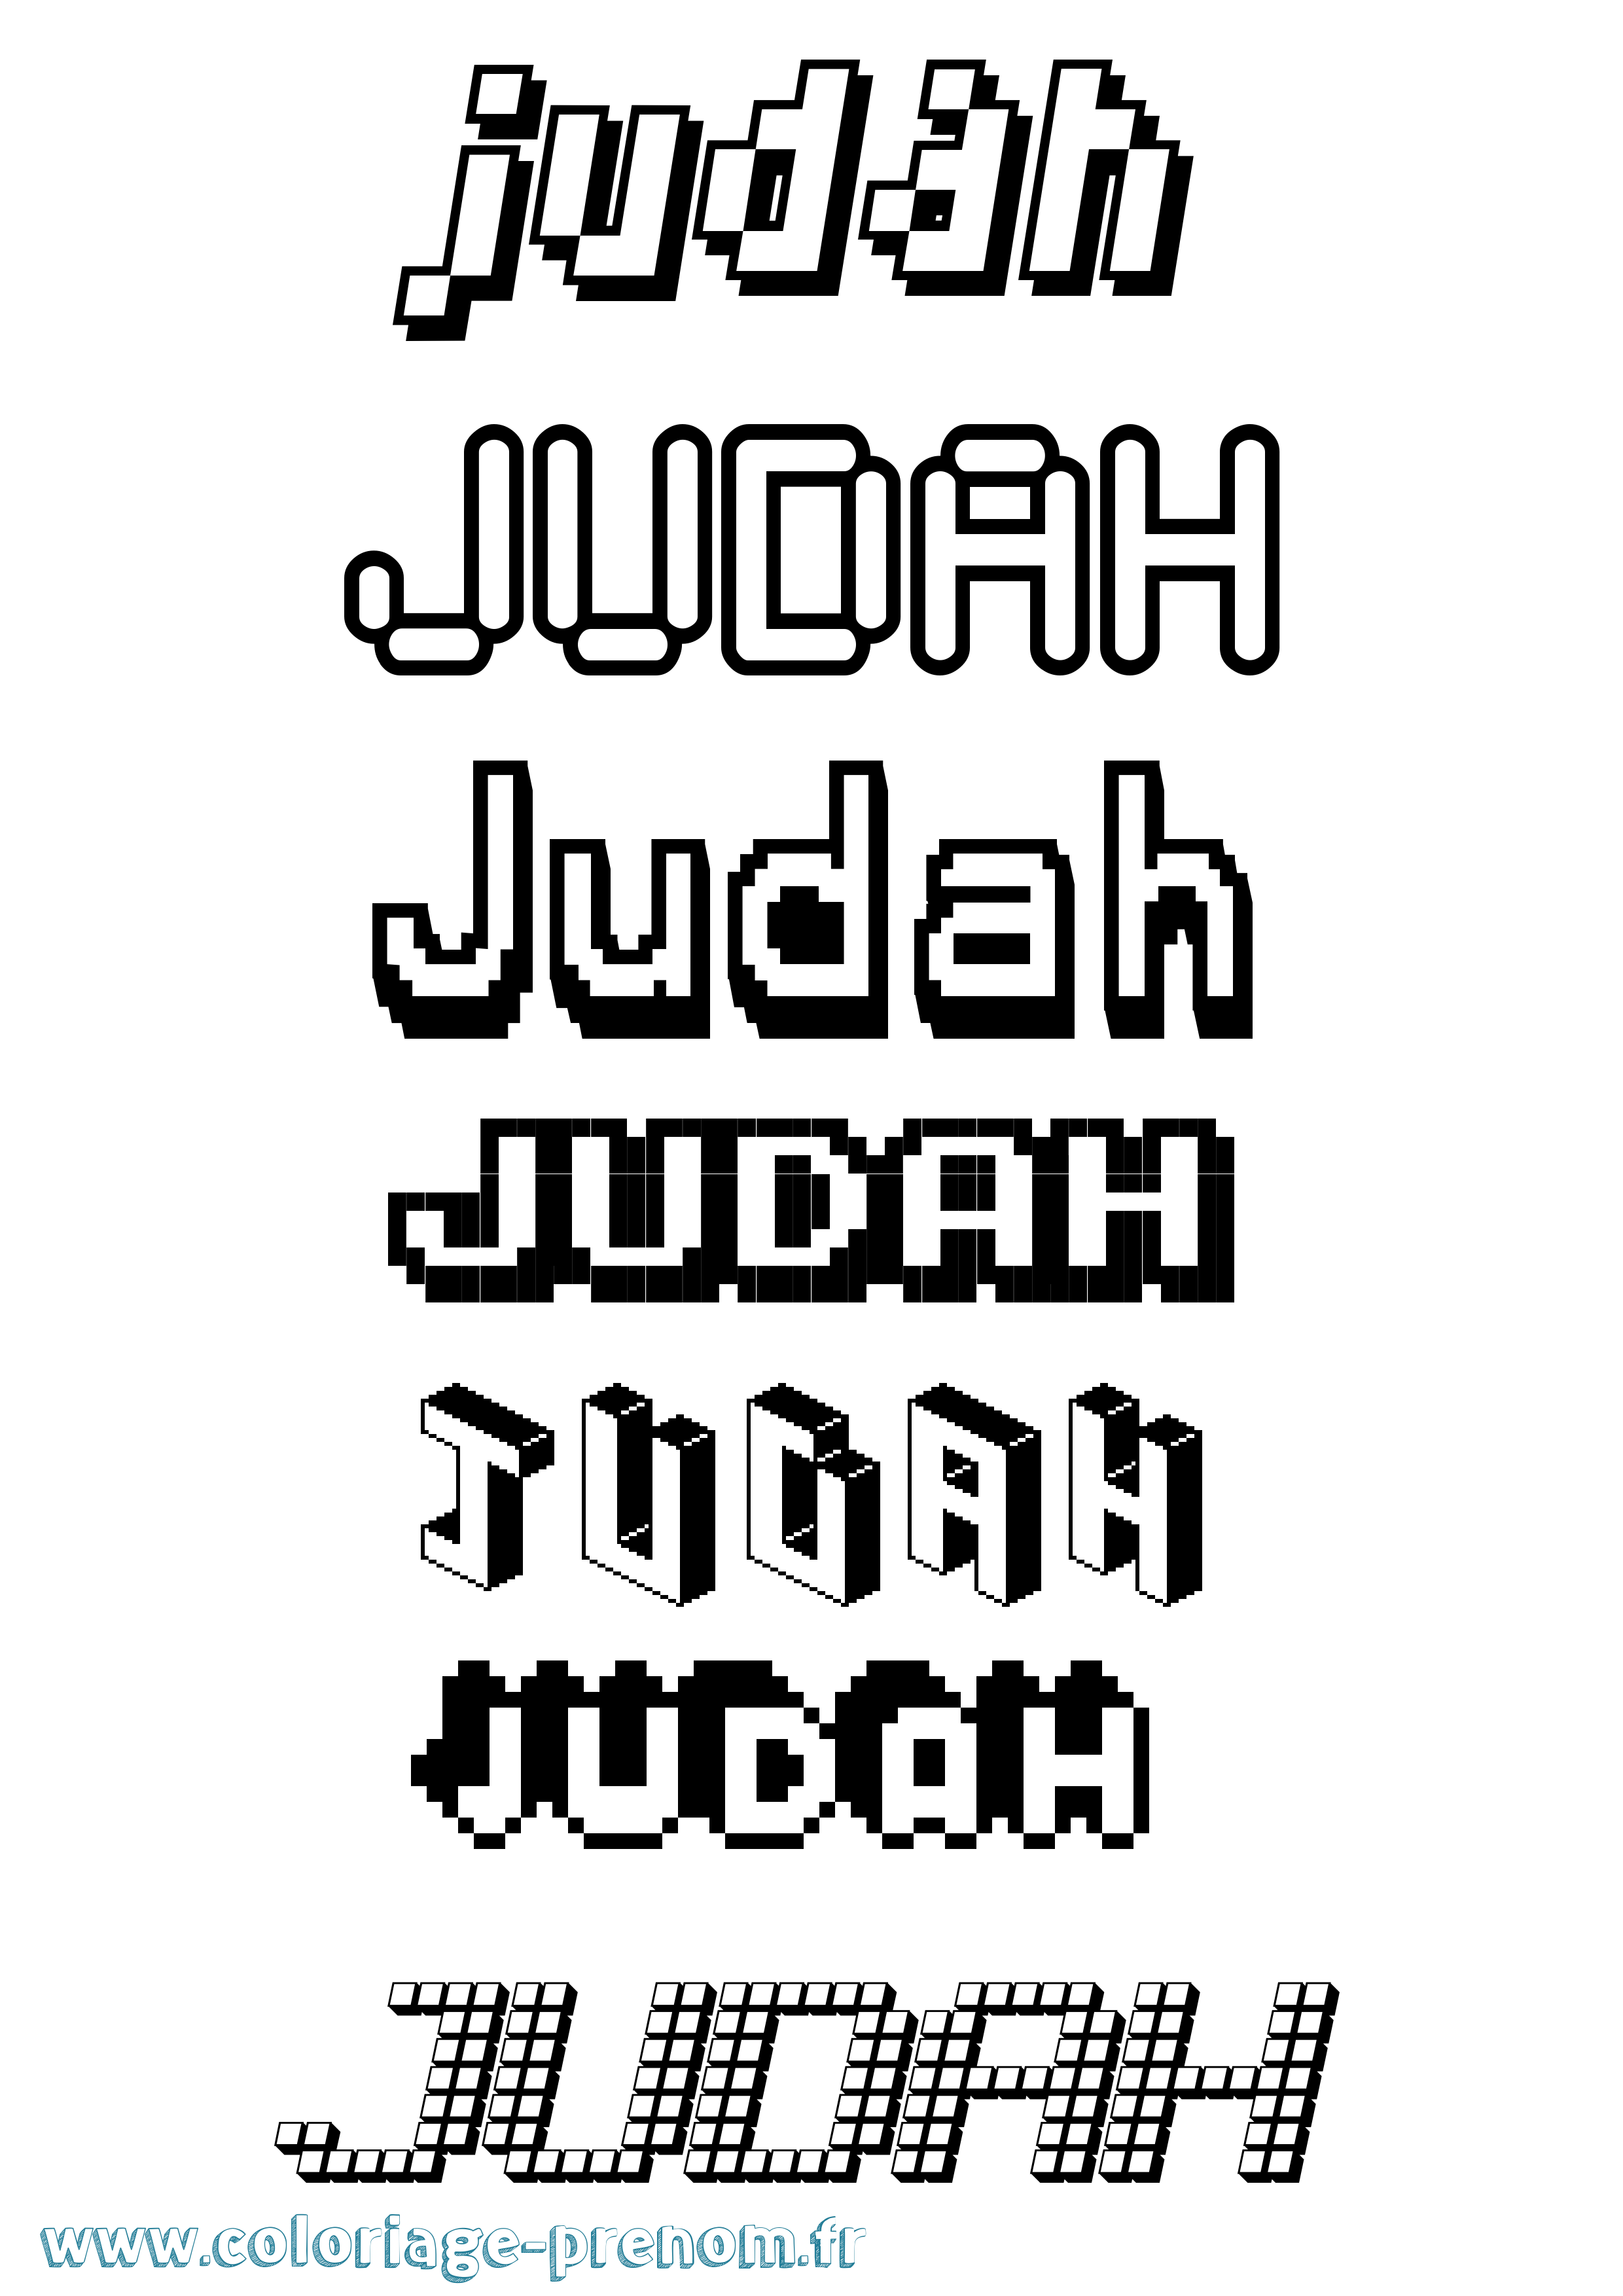 Coloriage prénom Judah Pixel